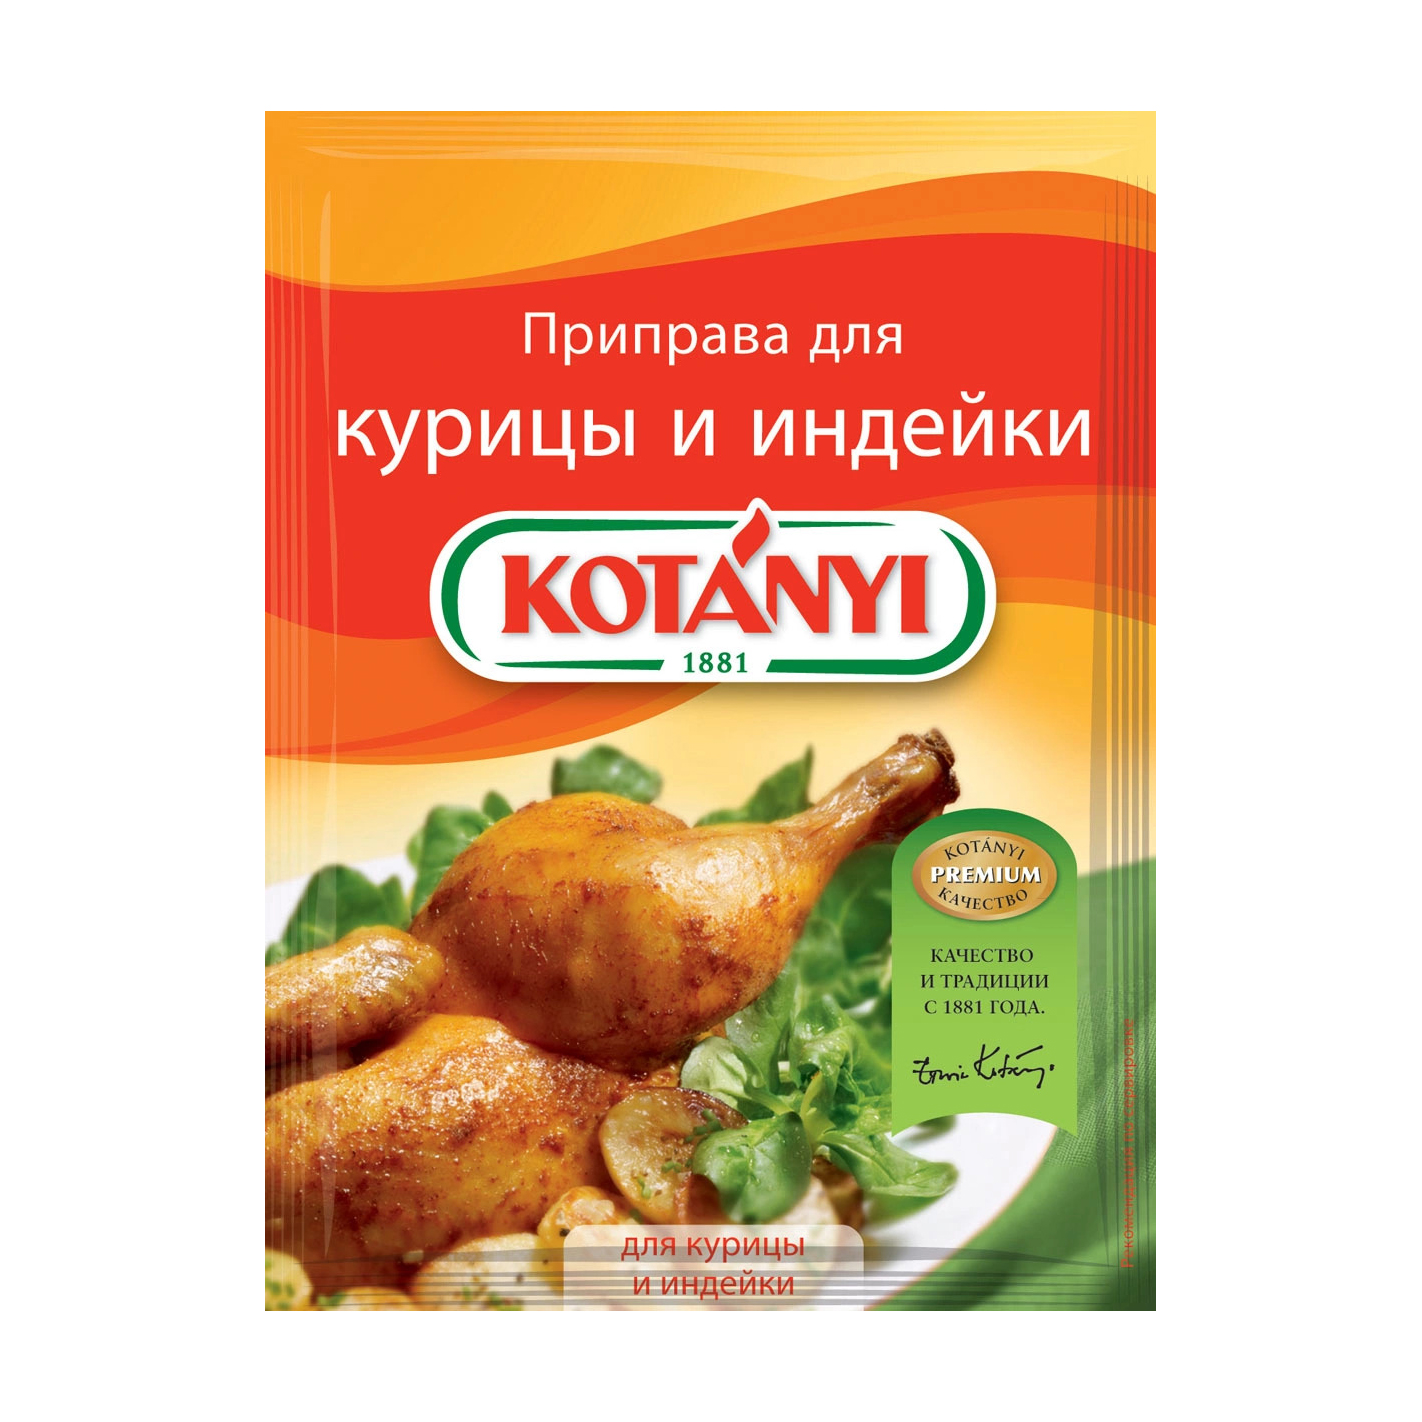 Приправа Kotanyi для курицы и индейки 30 г приправа kotanyi нежная корица для кофе 52 г